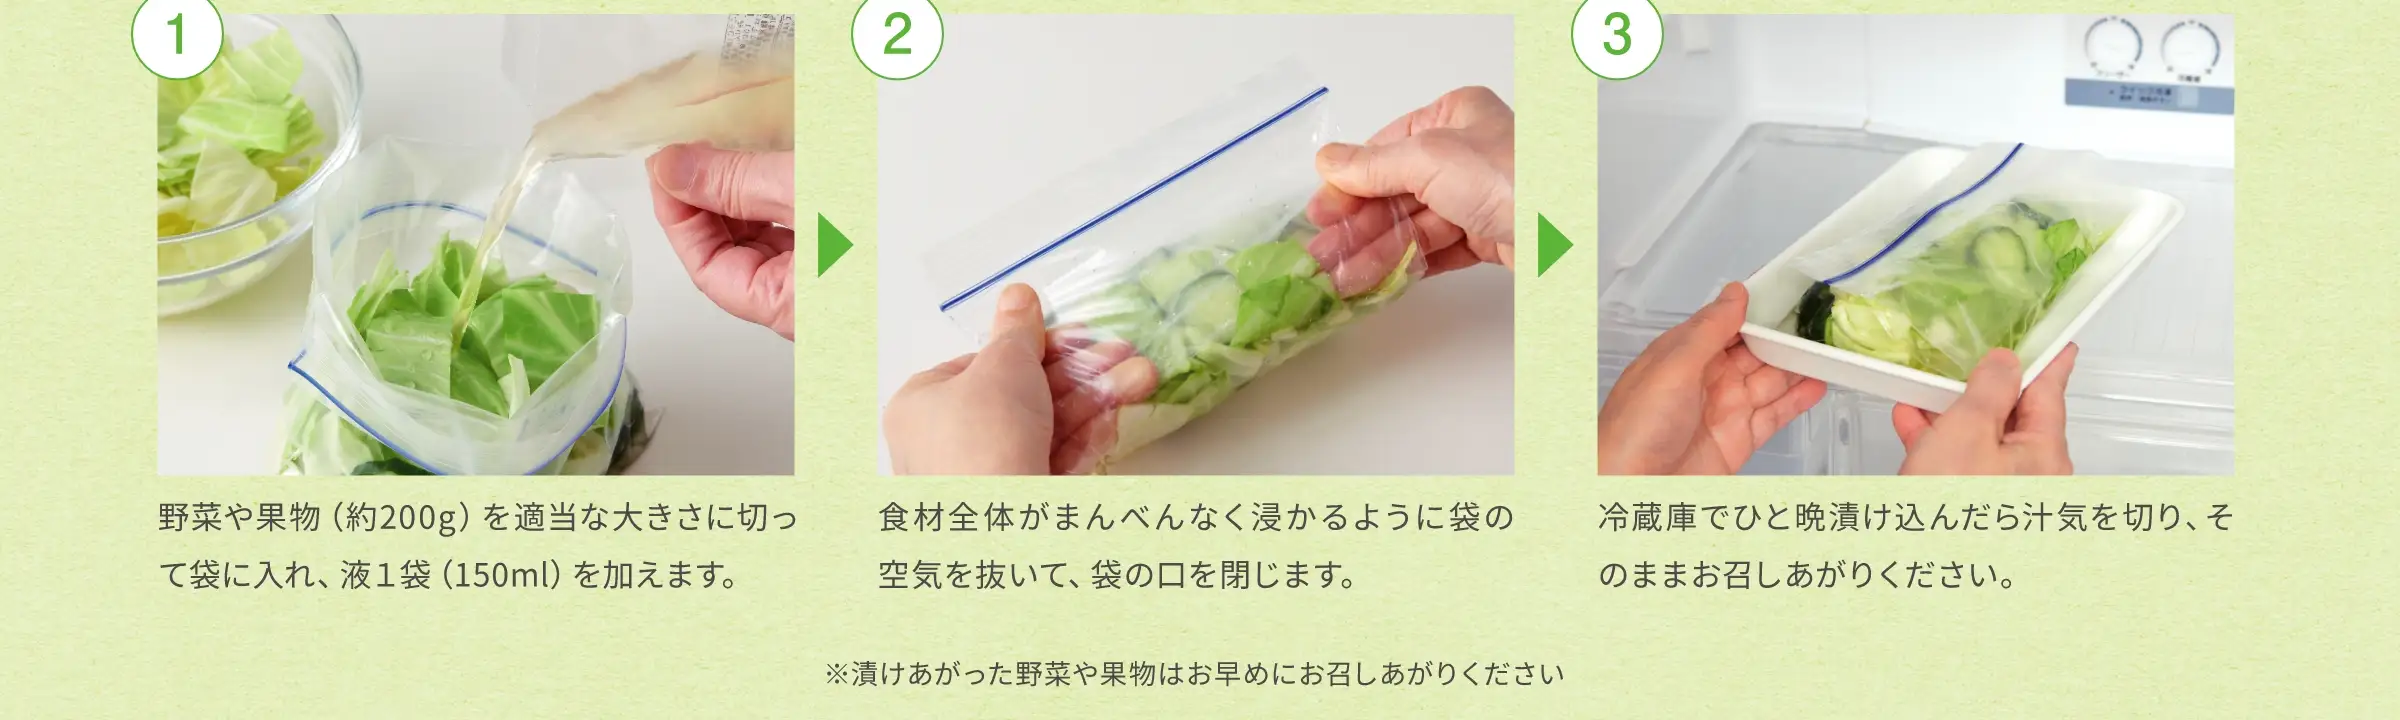 ①野菜や果物(約200g)を適当な大きさに切って袋に入れ、液1袋(150ml)を加えます。②食材全体がまんべんなく浸かるように袋の空気を抜いて、袋の口を閉じます。③冷蔵庫でひと晩漬け込んだら汁気を切り、そのままお召しあがりください。